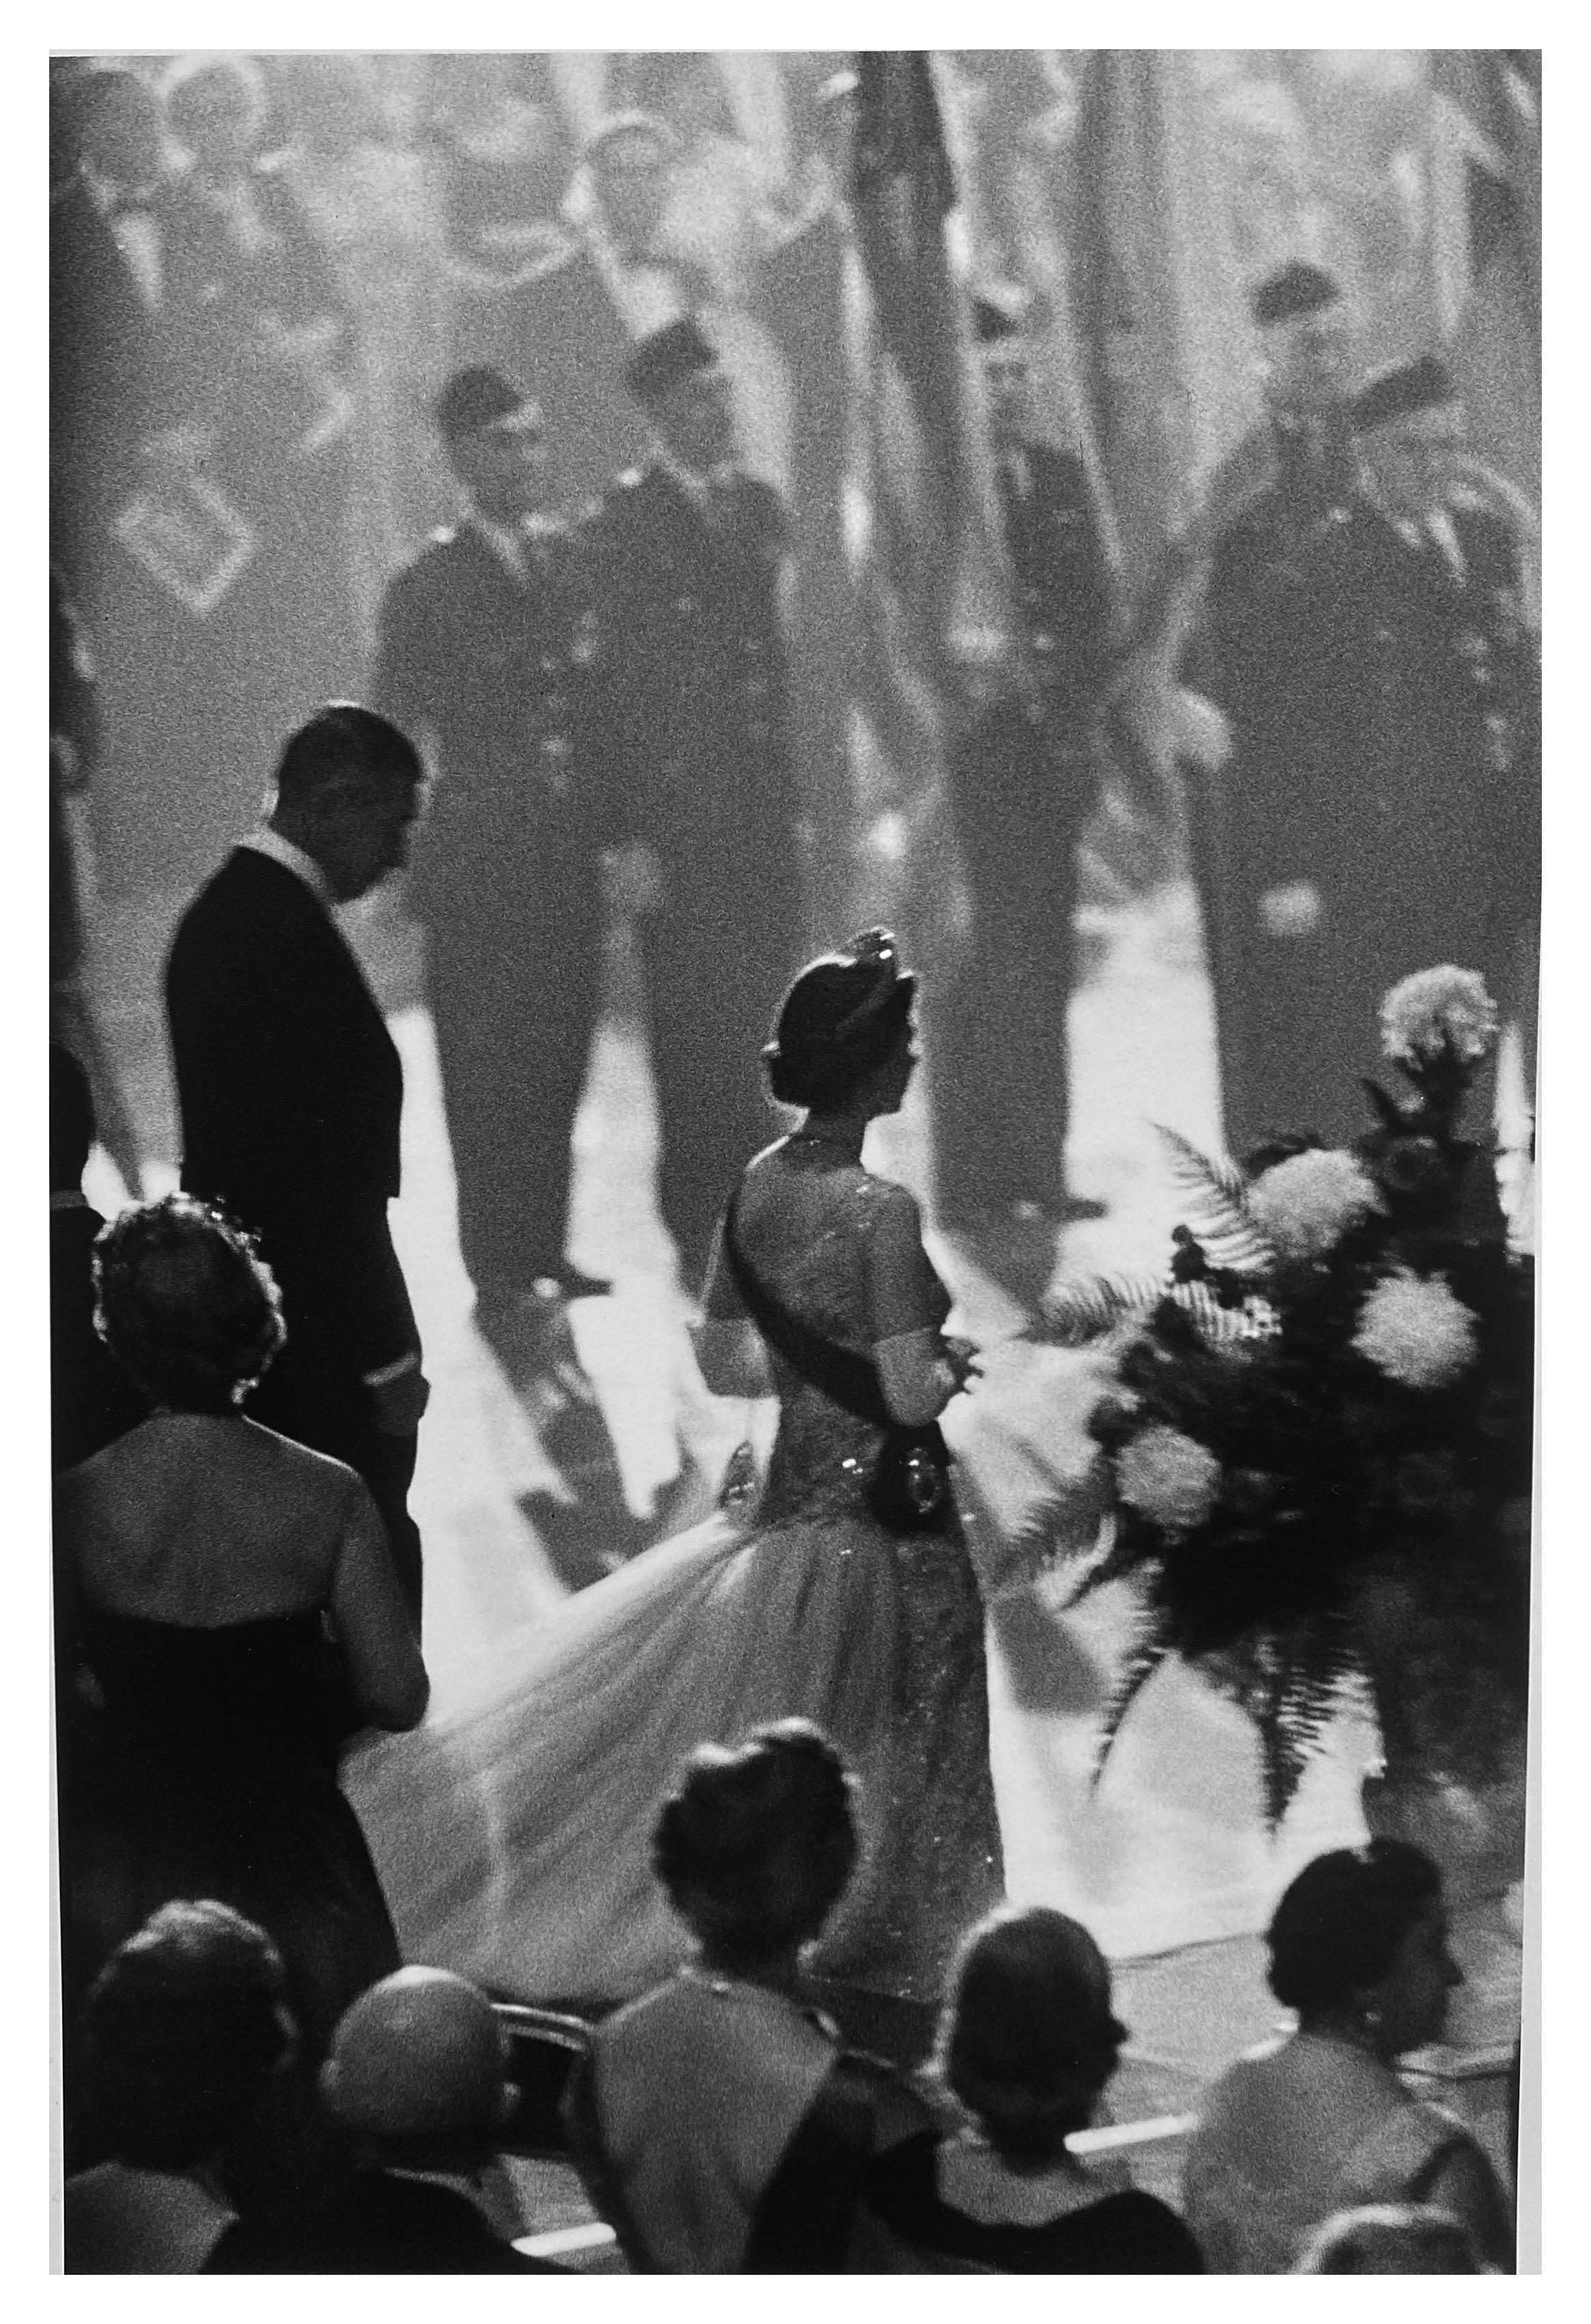 Queen Elizabeth II Visit to America, New York City 1950s, Gelatin Silver Print – Photograph von Burt Glinn